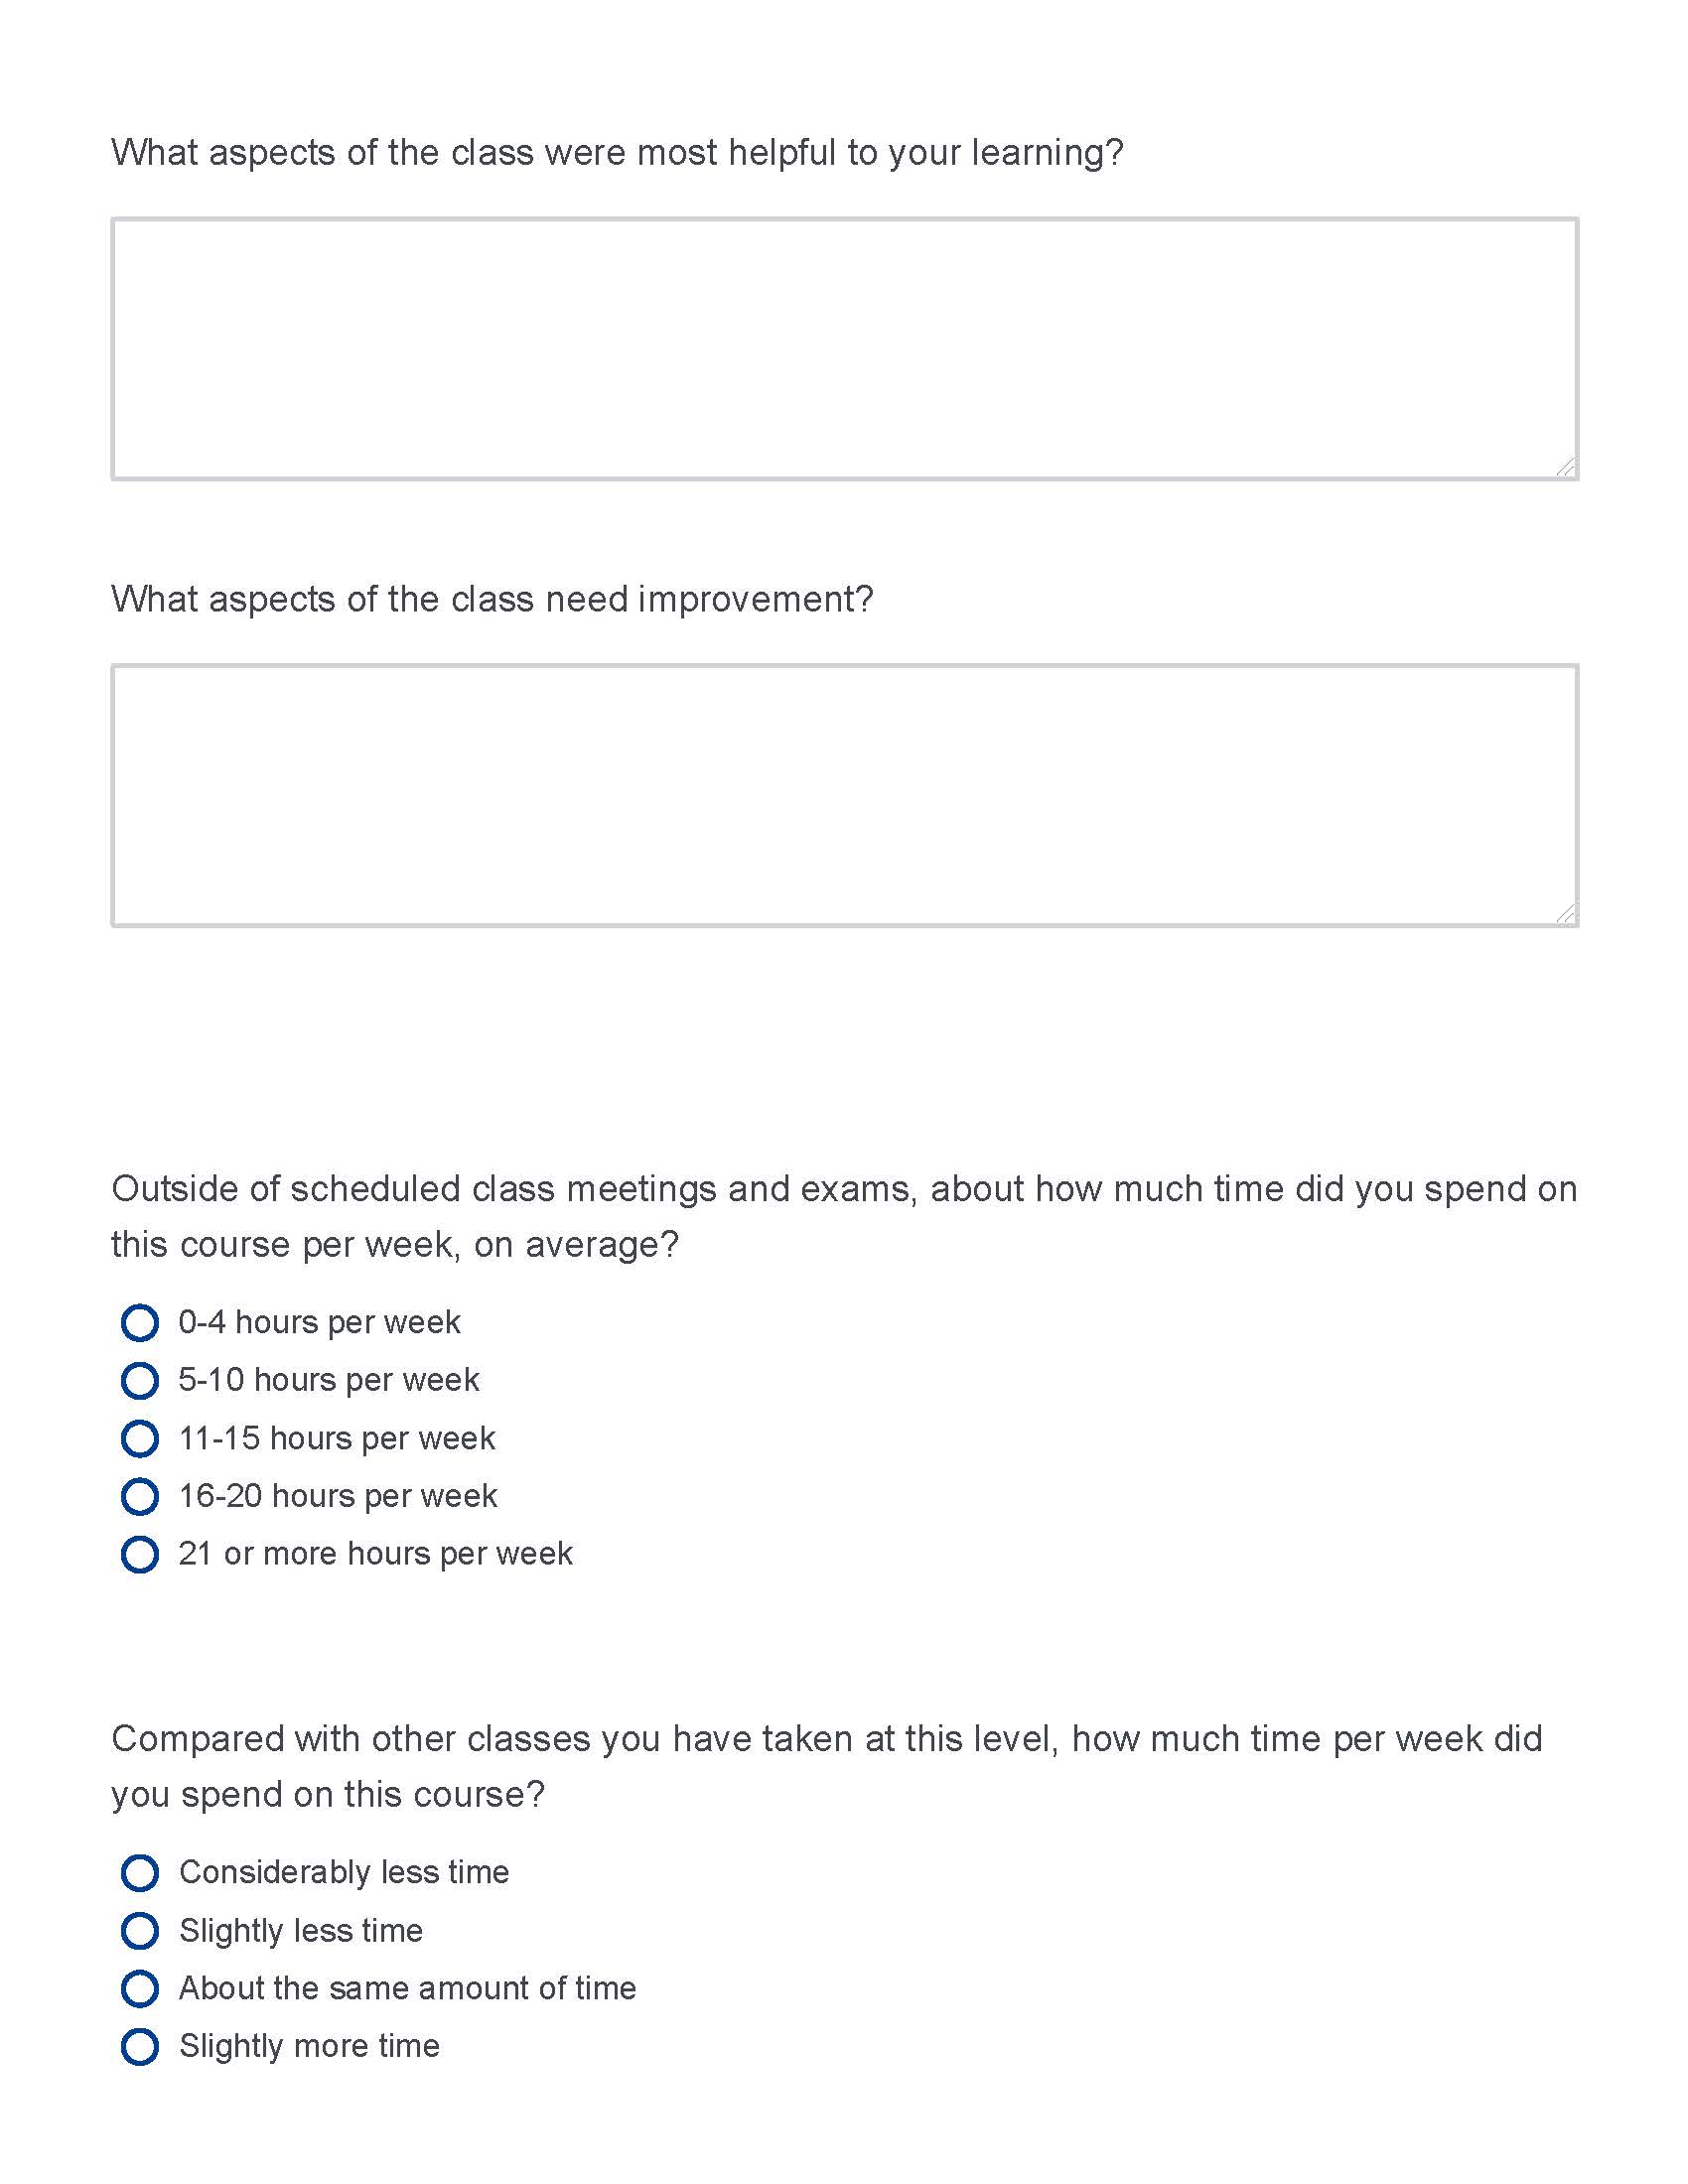 Course Survey page 2